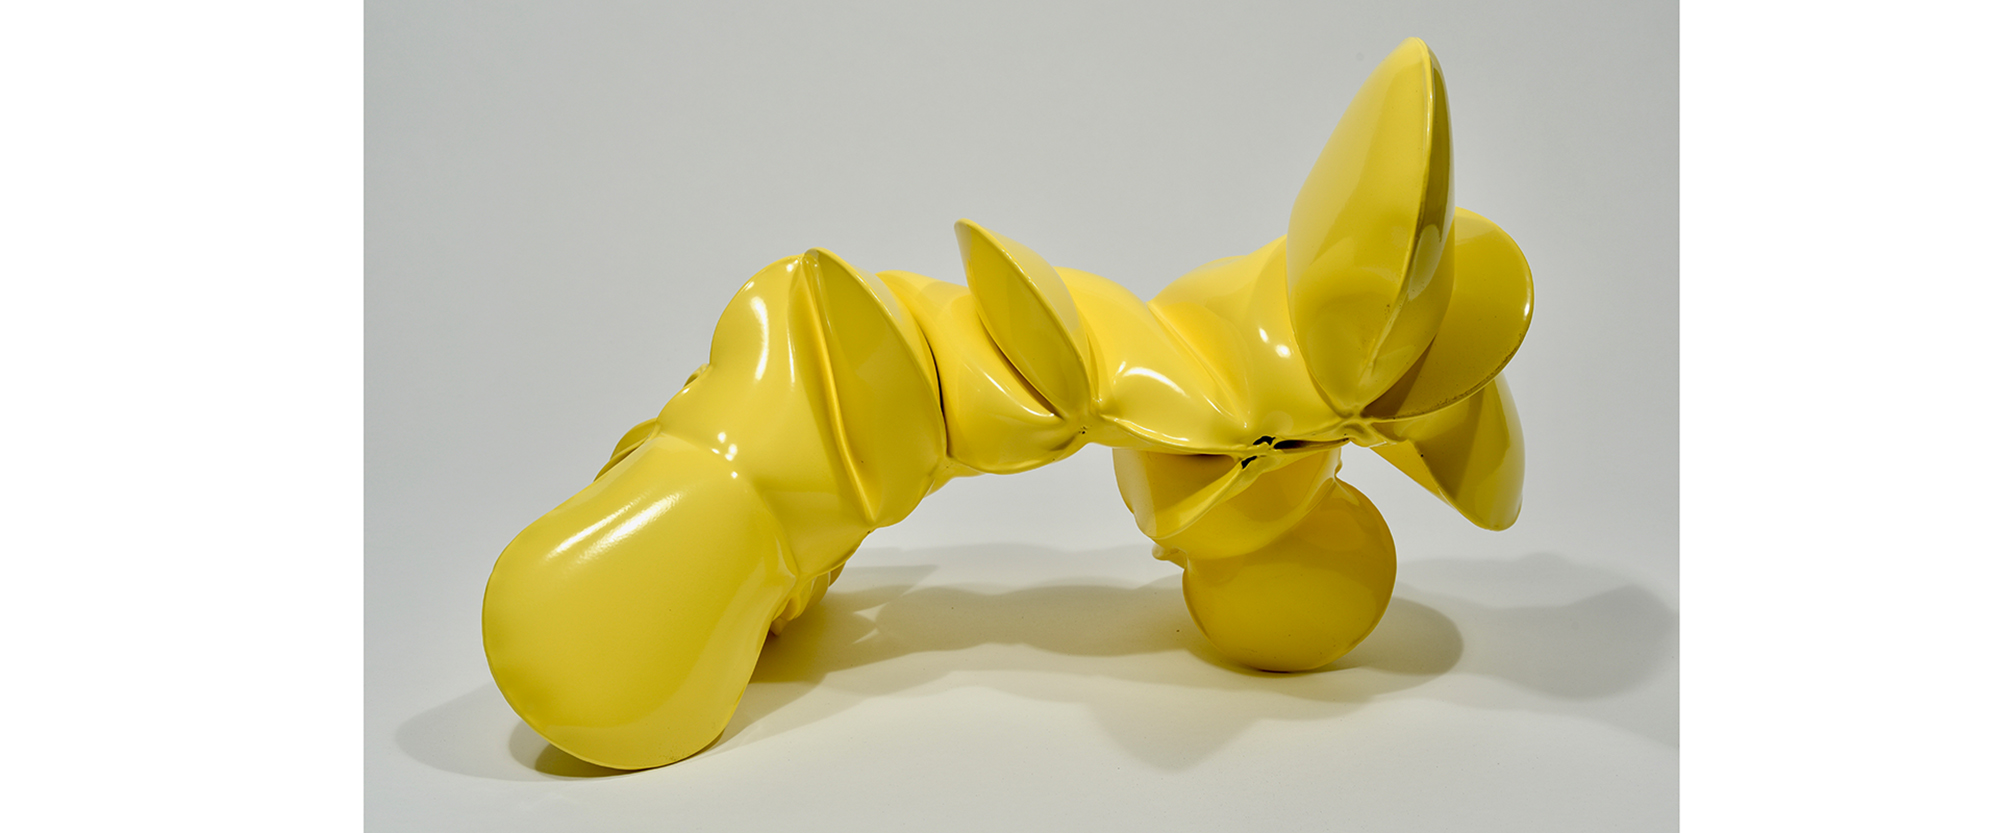 Glutamate Yellow - 2019, Kalt gewälzter Stahl, pulverbeschichtet, 33 x 50,8 x 28 cm